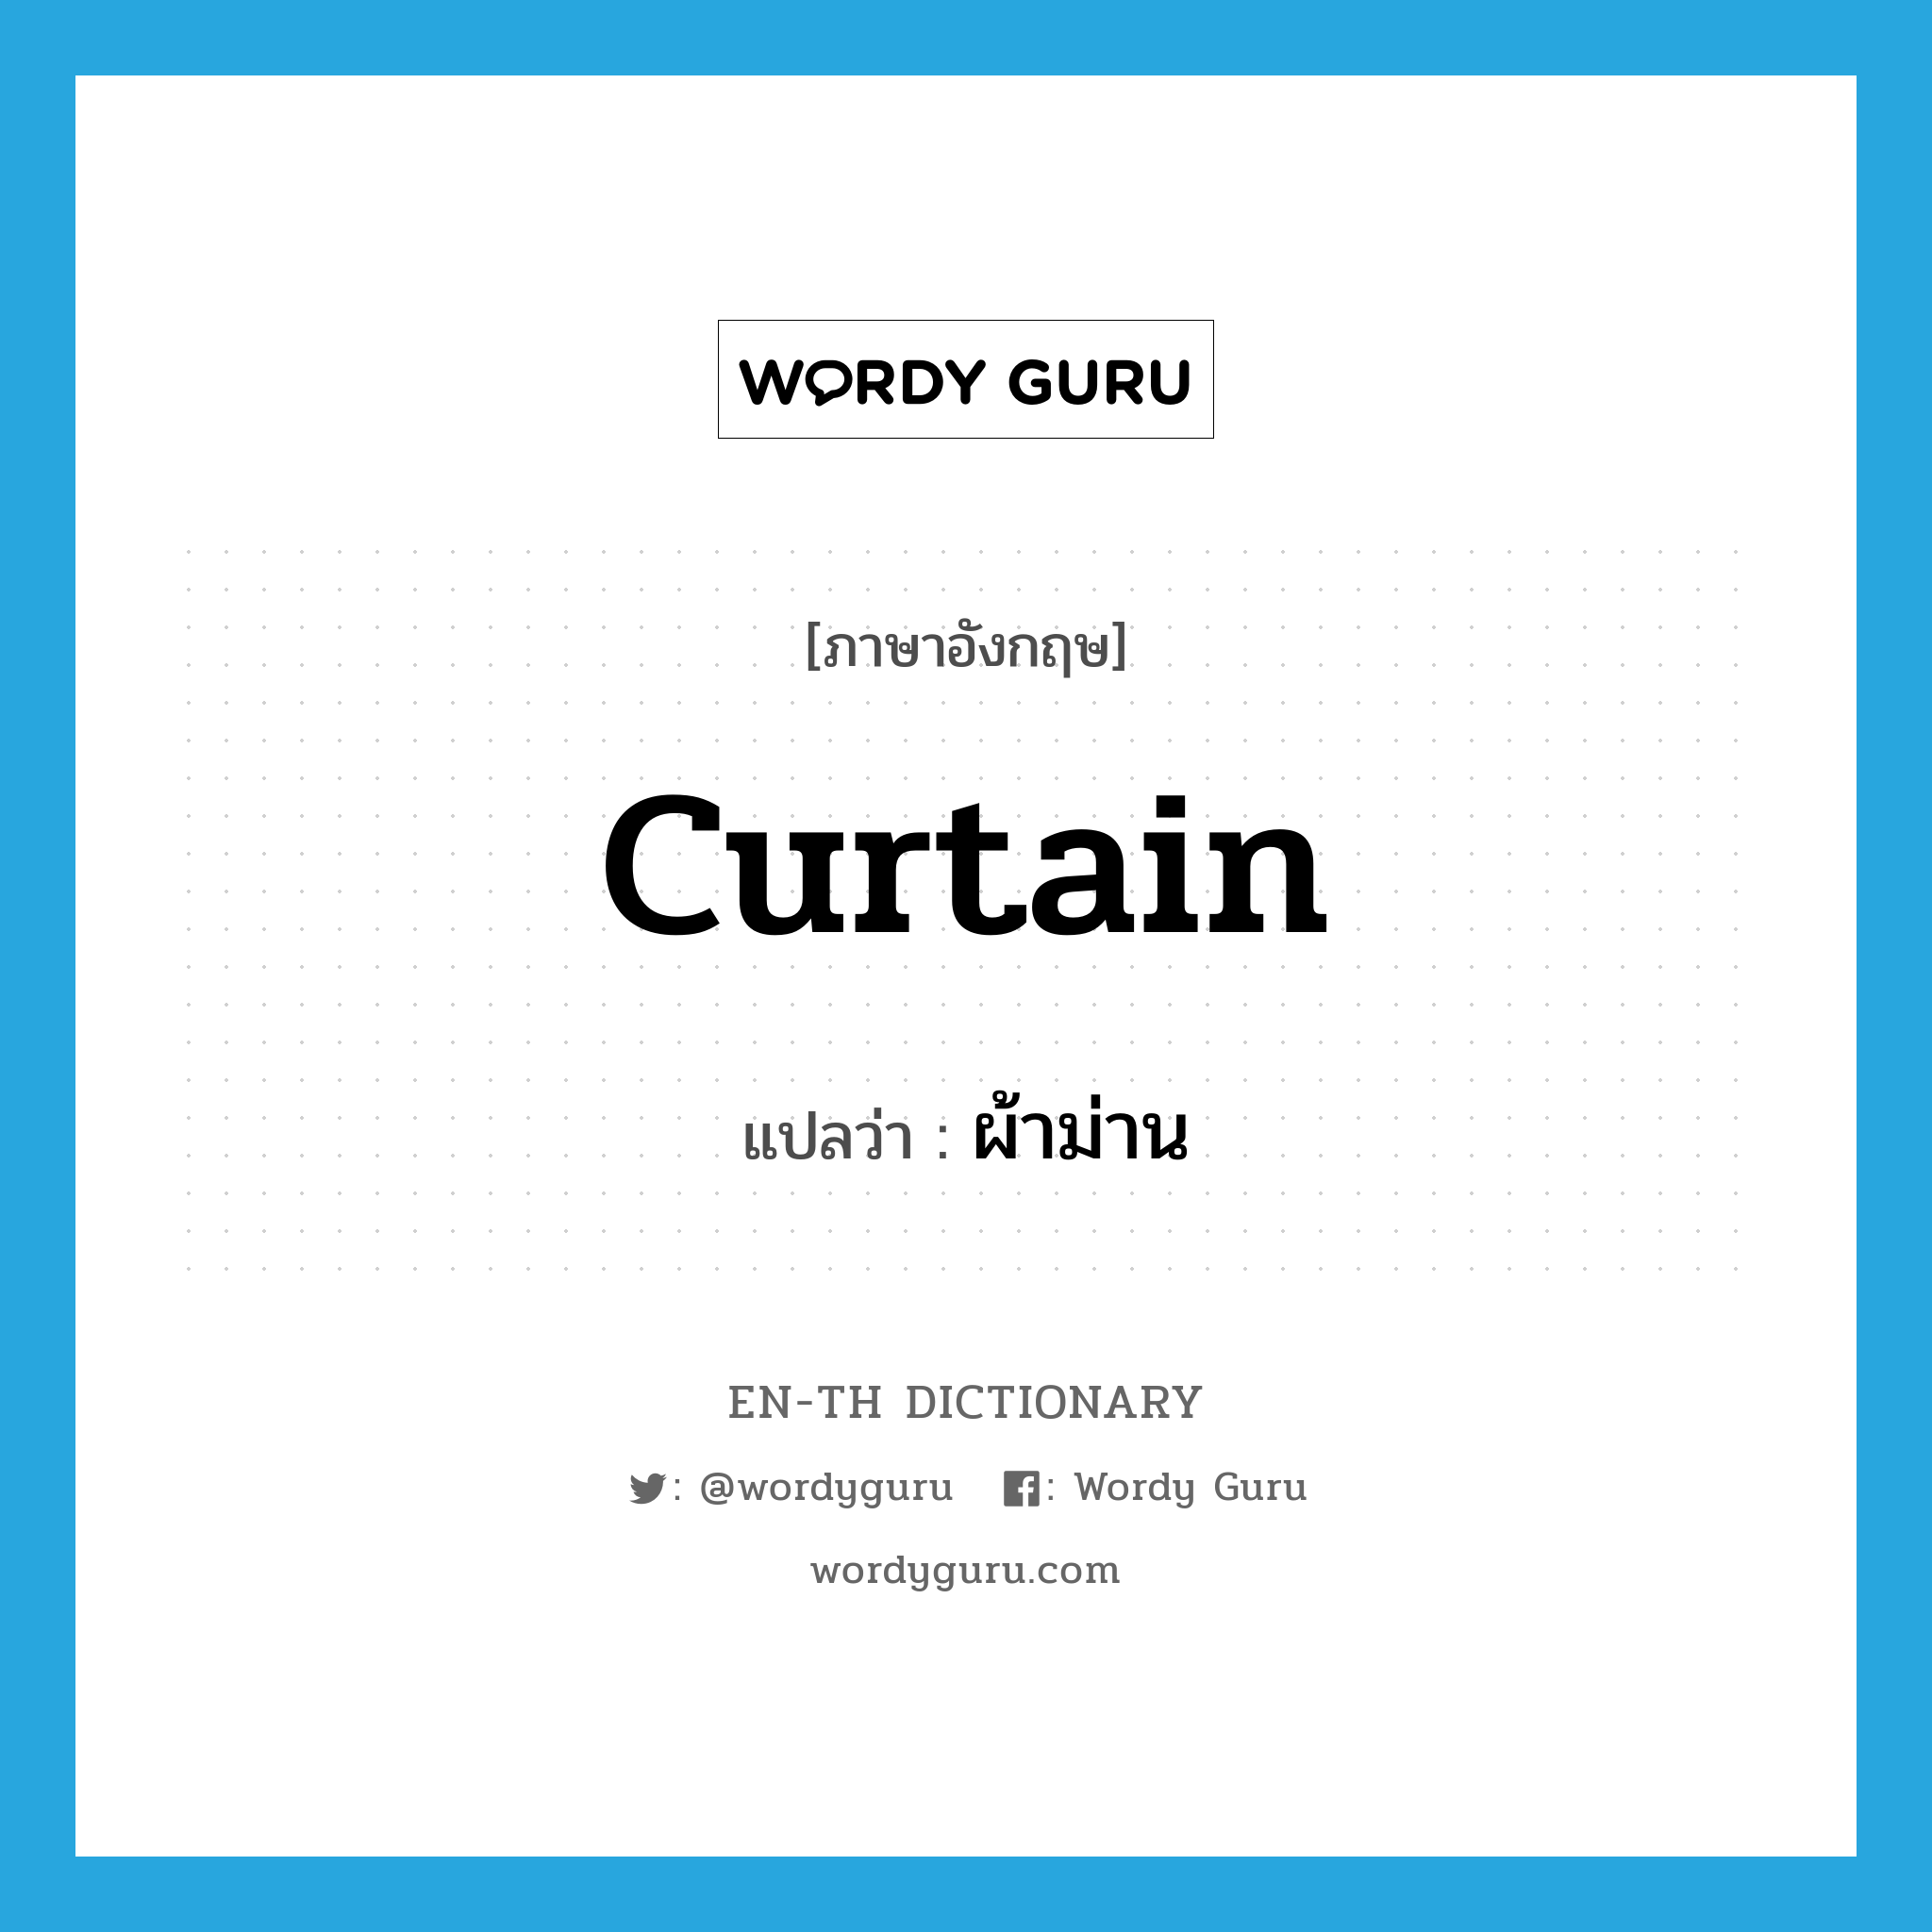 curtain แปลว่า?, คำศัพท์ภาษาอังกฤษ curtain แปลว่า ผ้าม่าน ประเภท N หมวด N